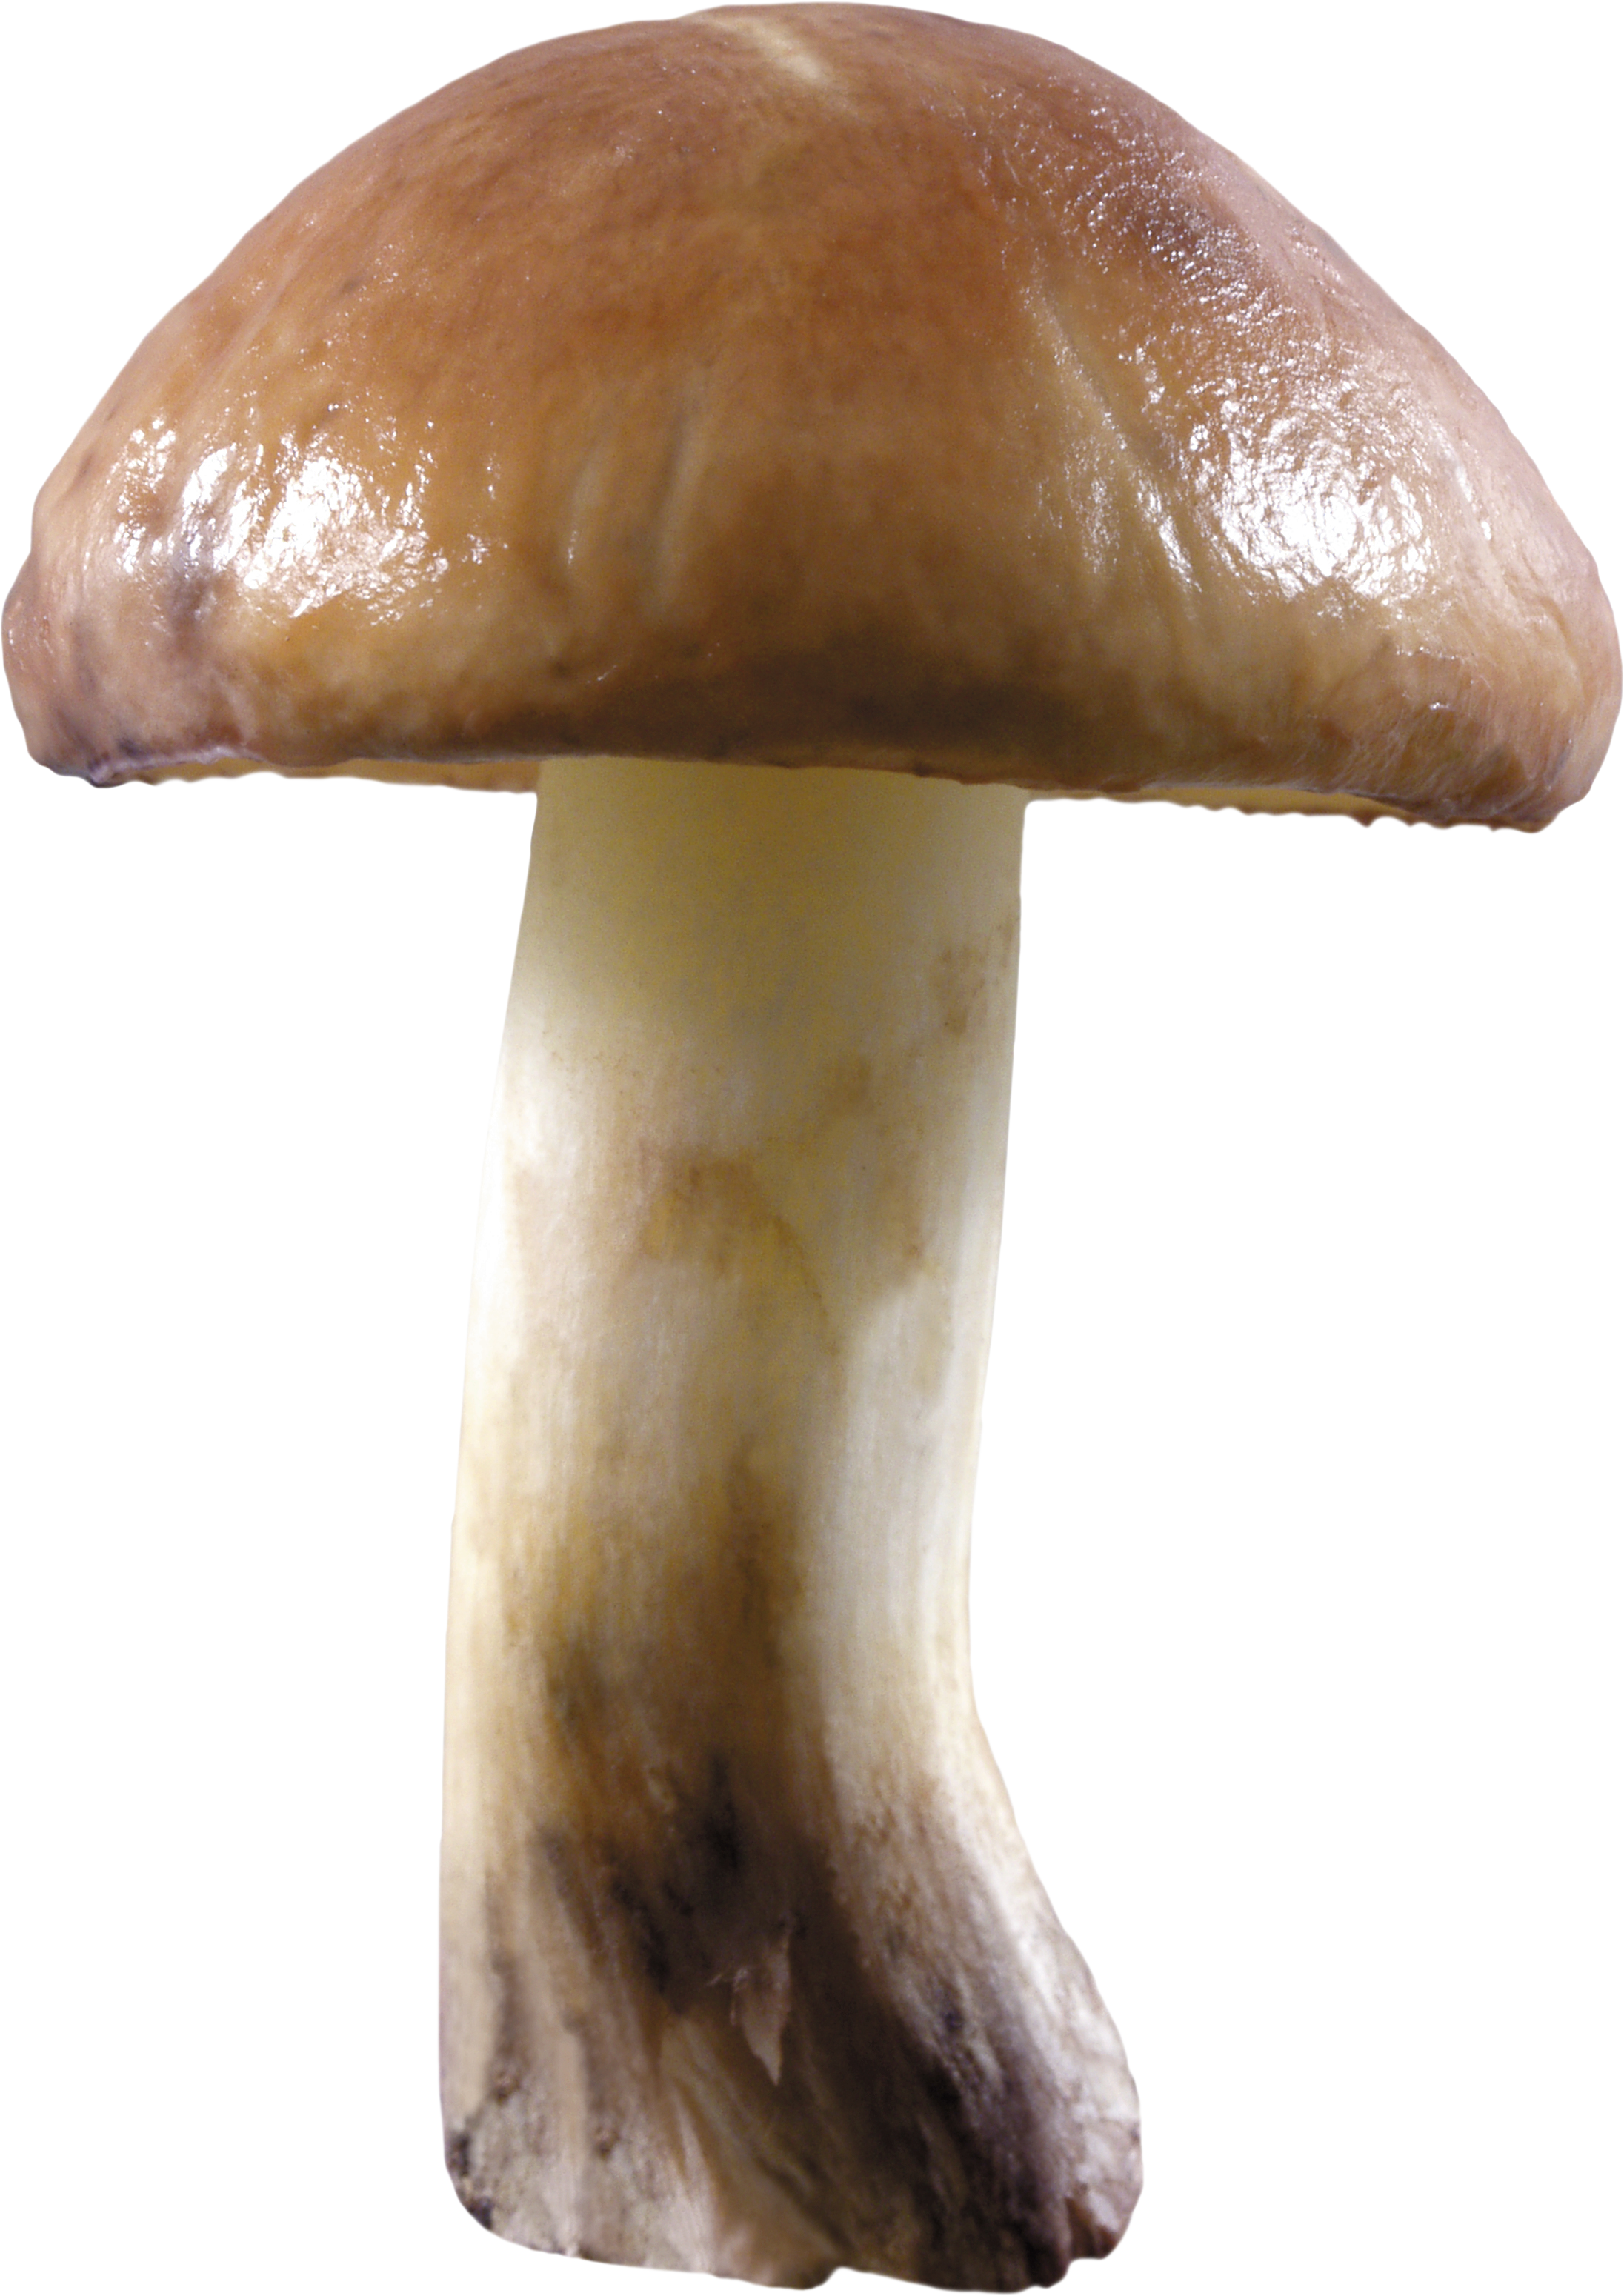 Mushroom 1 photo